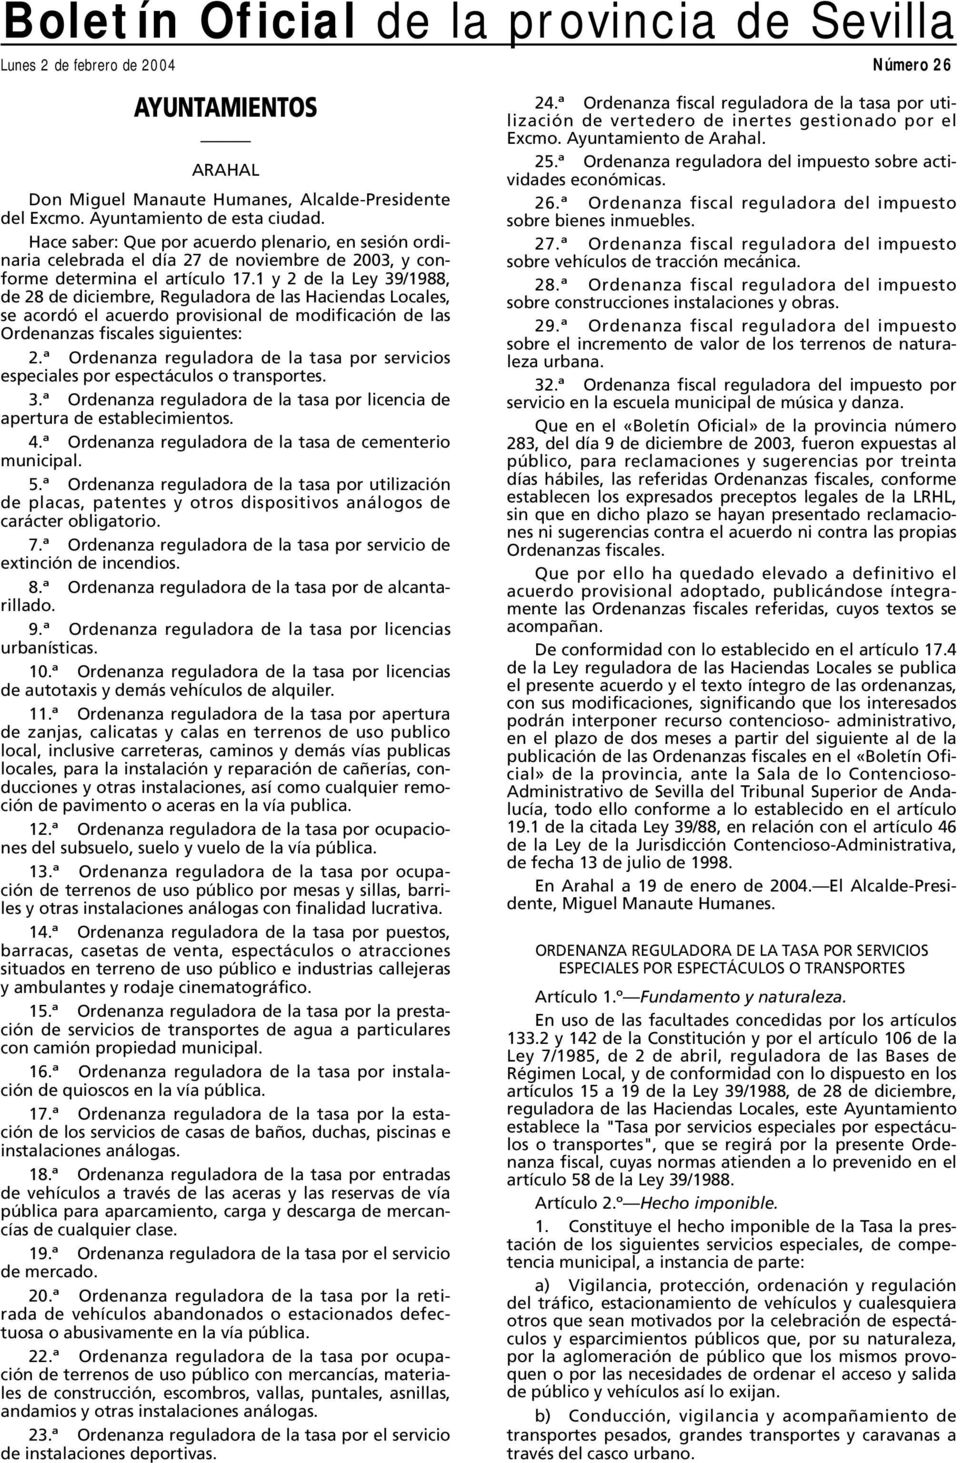 1 y 2 de la Ley 39/1988, de 28 de diciembre, Reguladora de las Haciendas Locales, se acordó el acuerdo provisional de modificación de las Ordenanzas fiscales siguientes: 2.